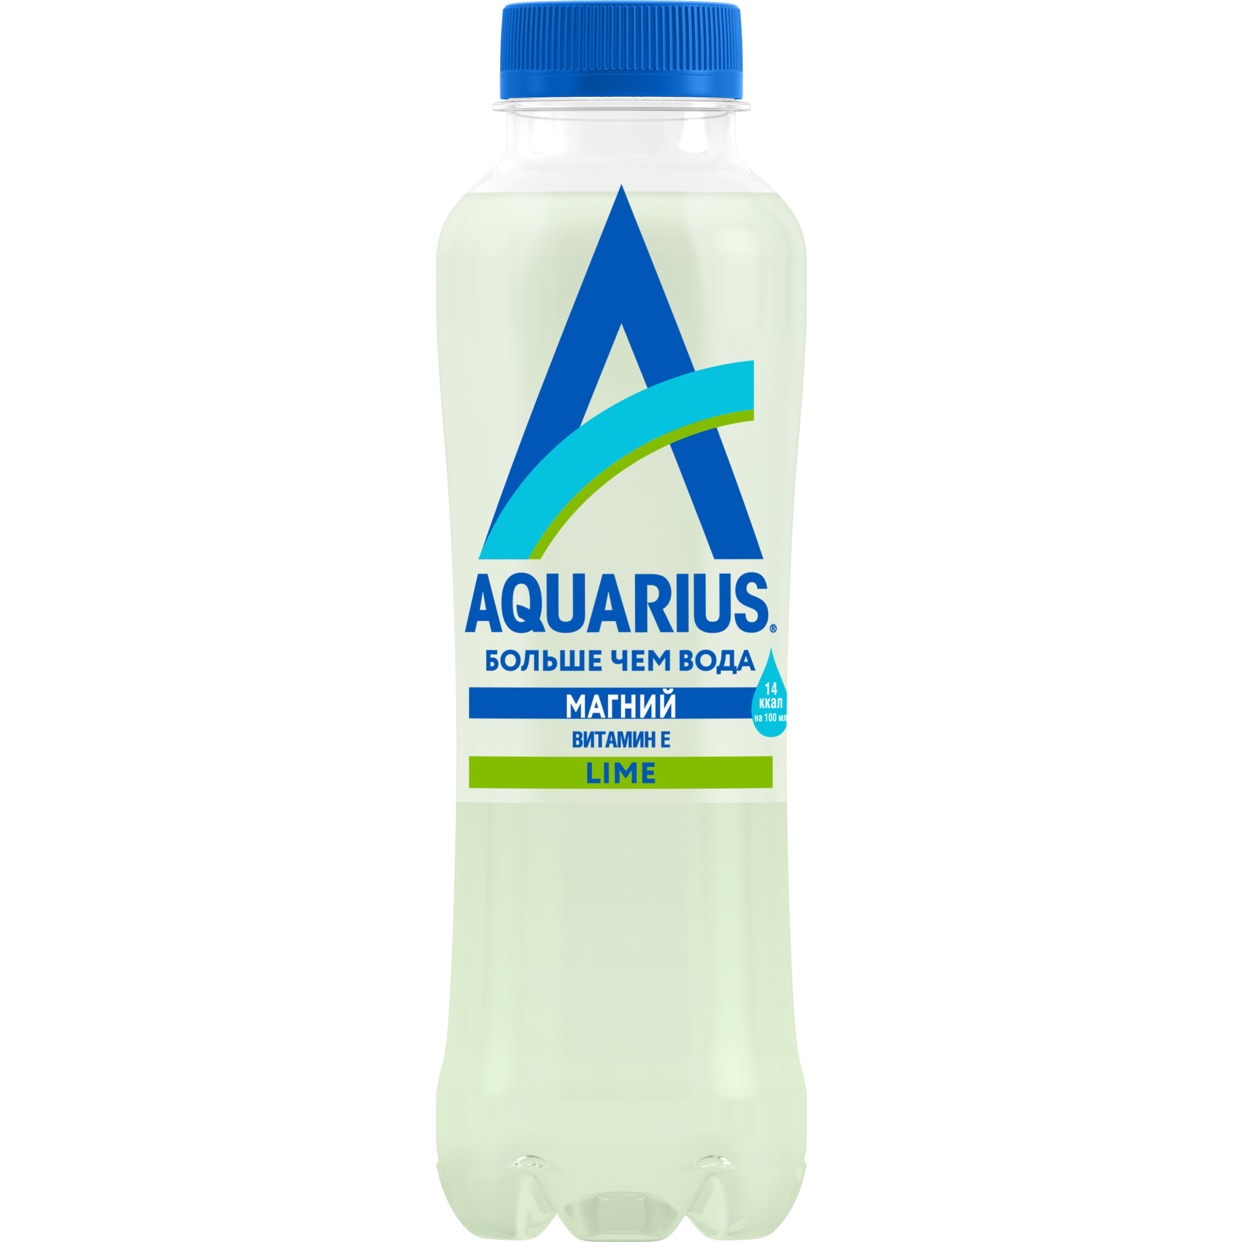 Напиток "Аквариус" со вкусом лайма" (Aquarius Lime) безалкогольный негаз,обогащенный магнием и витамином Е 400мл